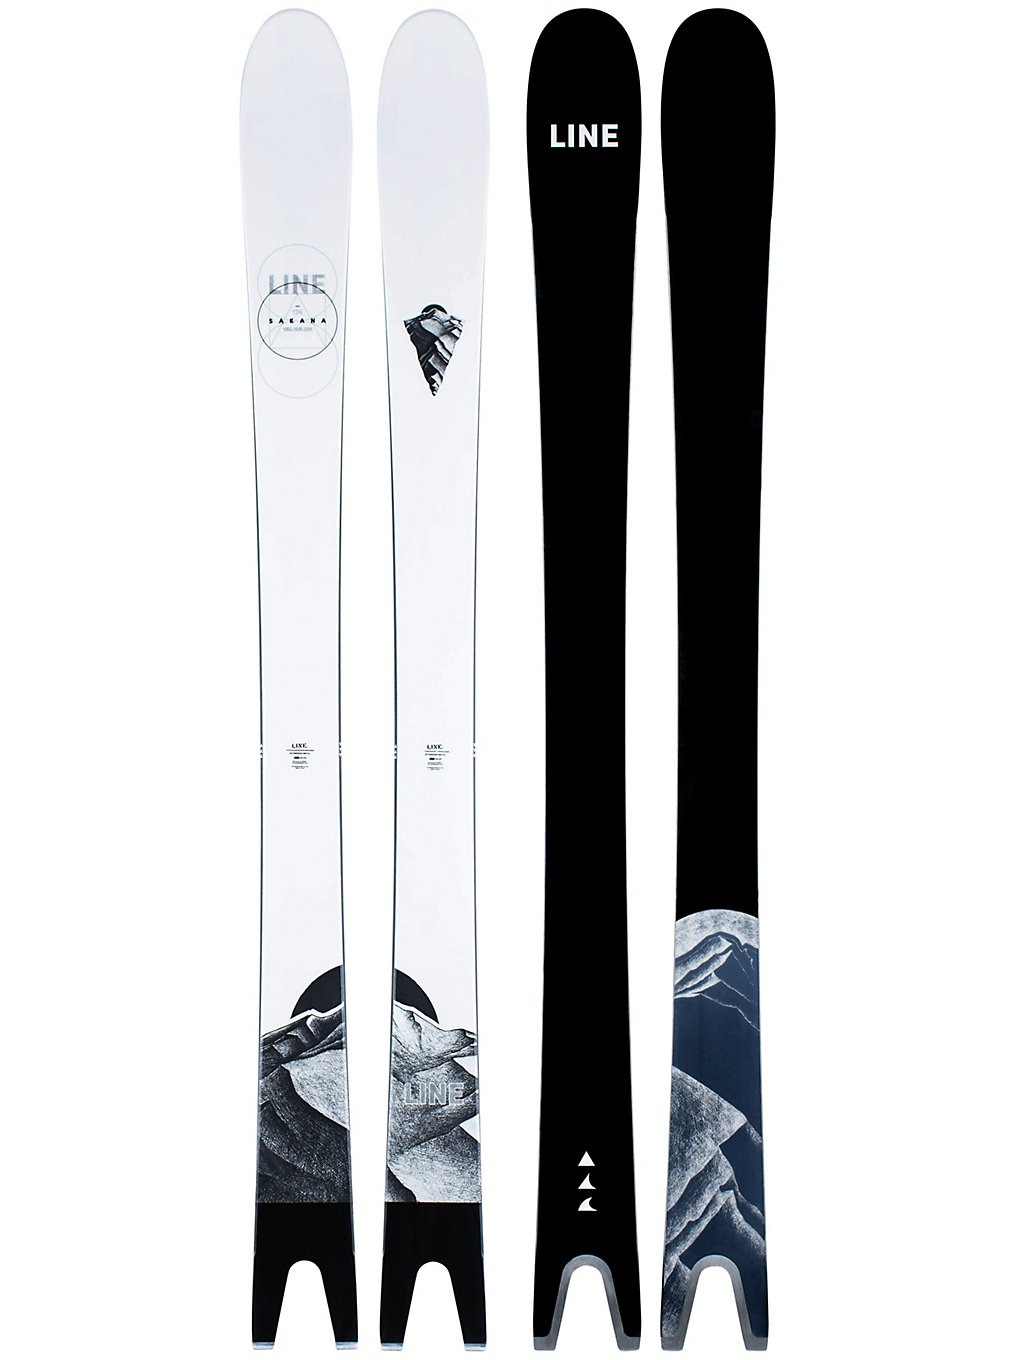 Line Sakana 105mm 181 2021 Skis design